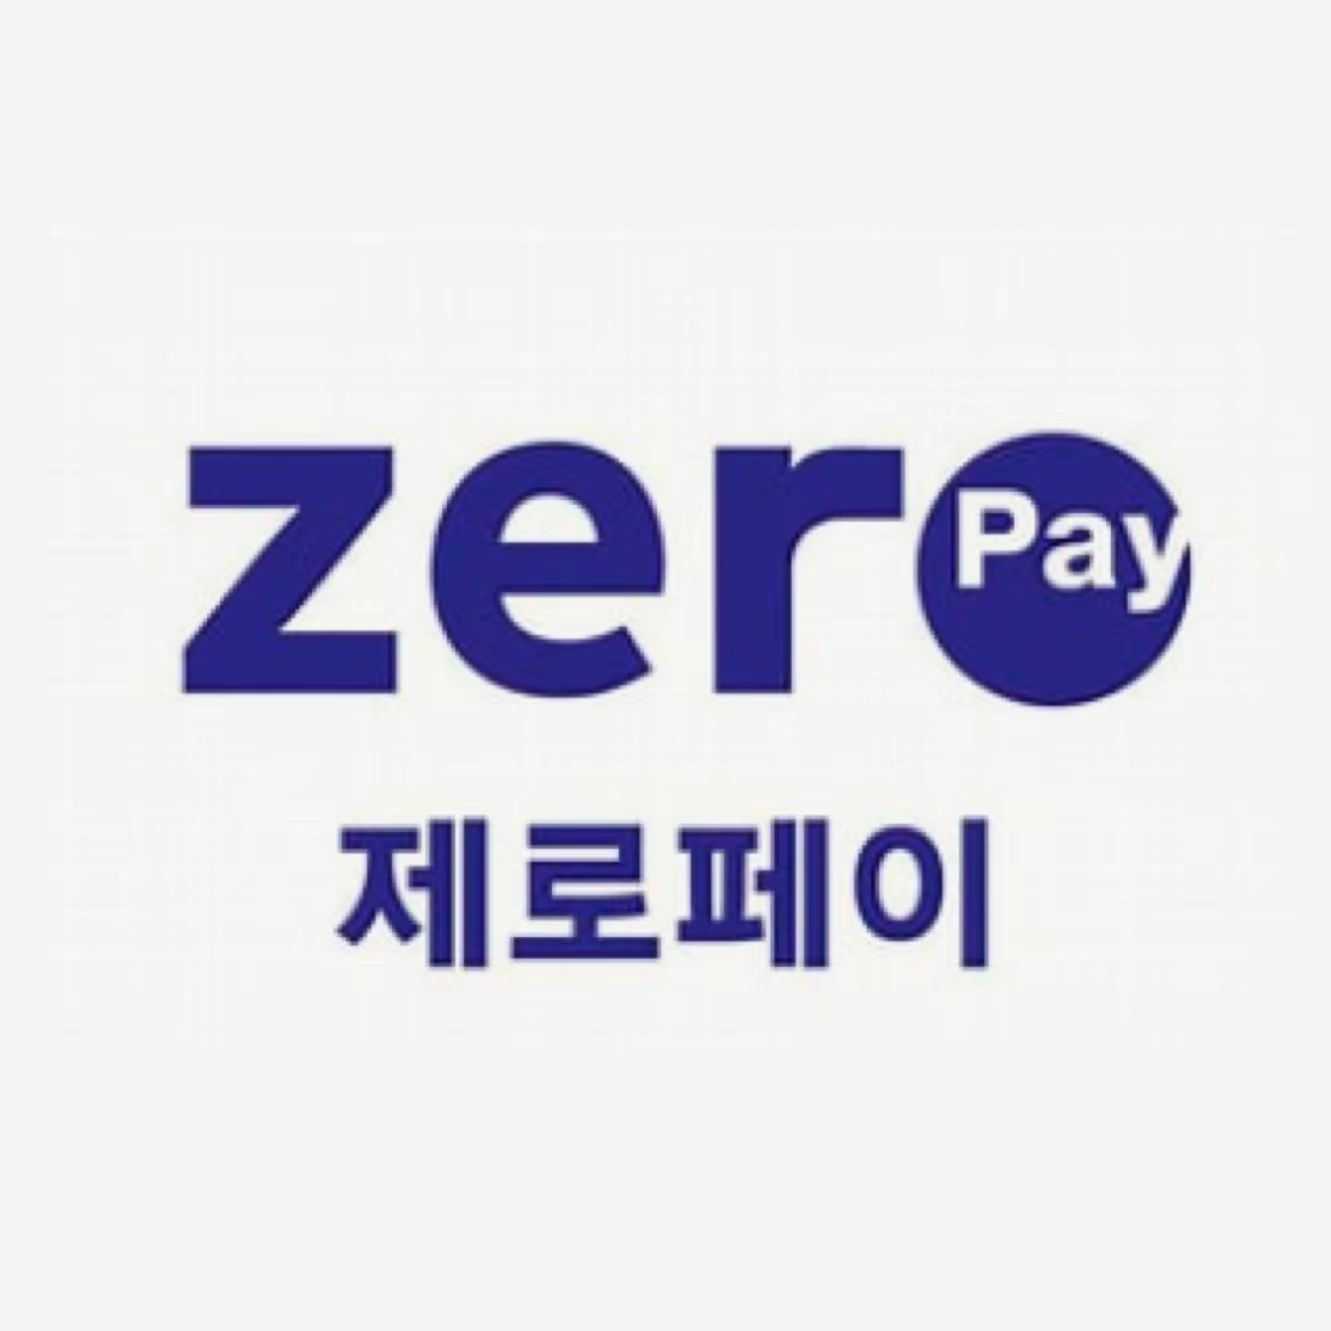 Zero Pay